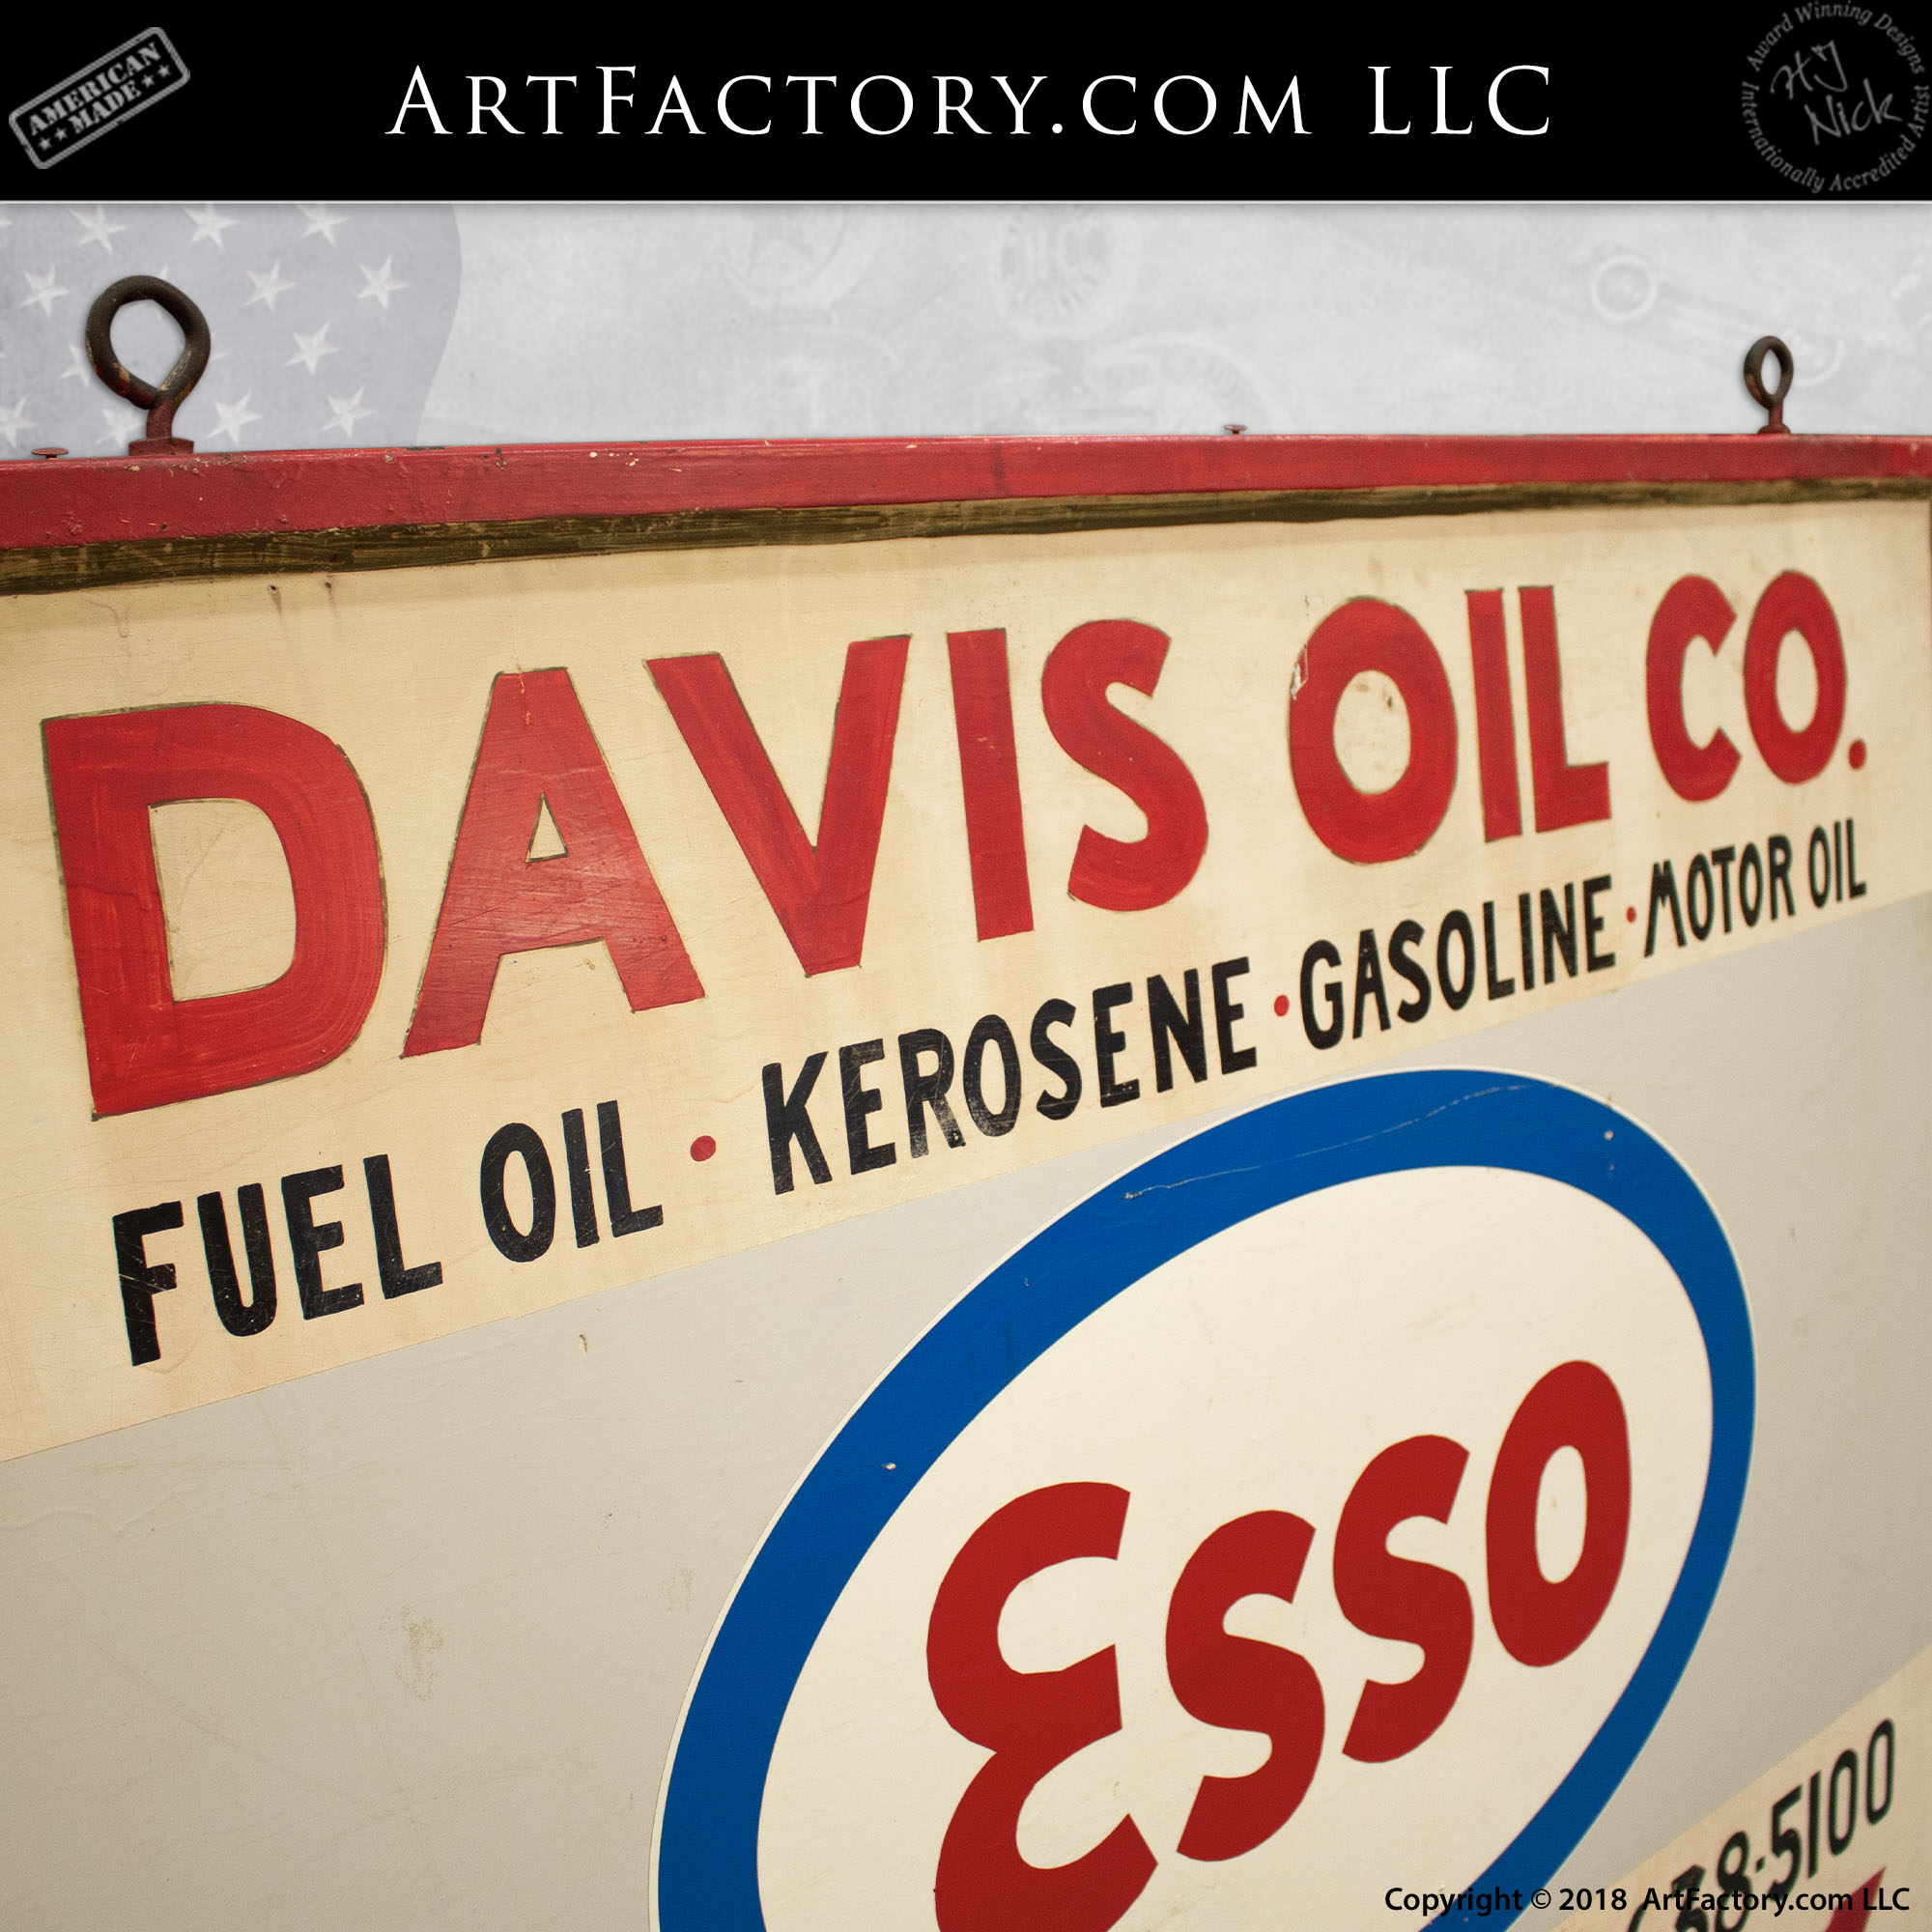 Esso Davis Oil Company Office Sign